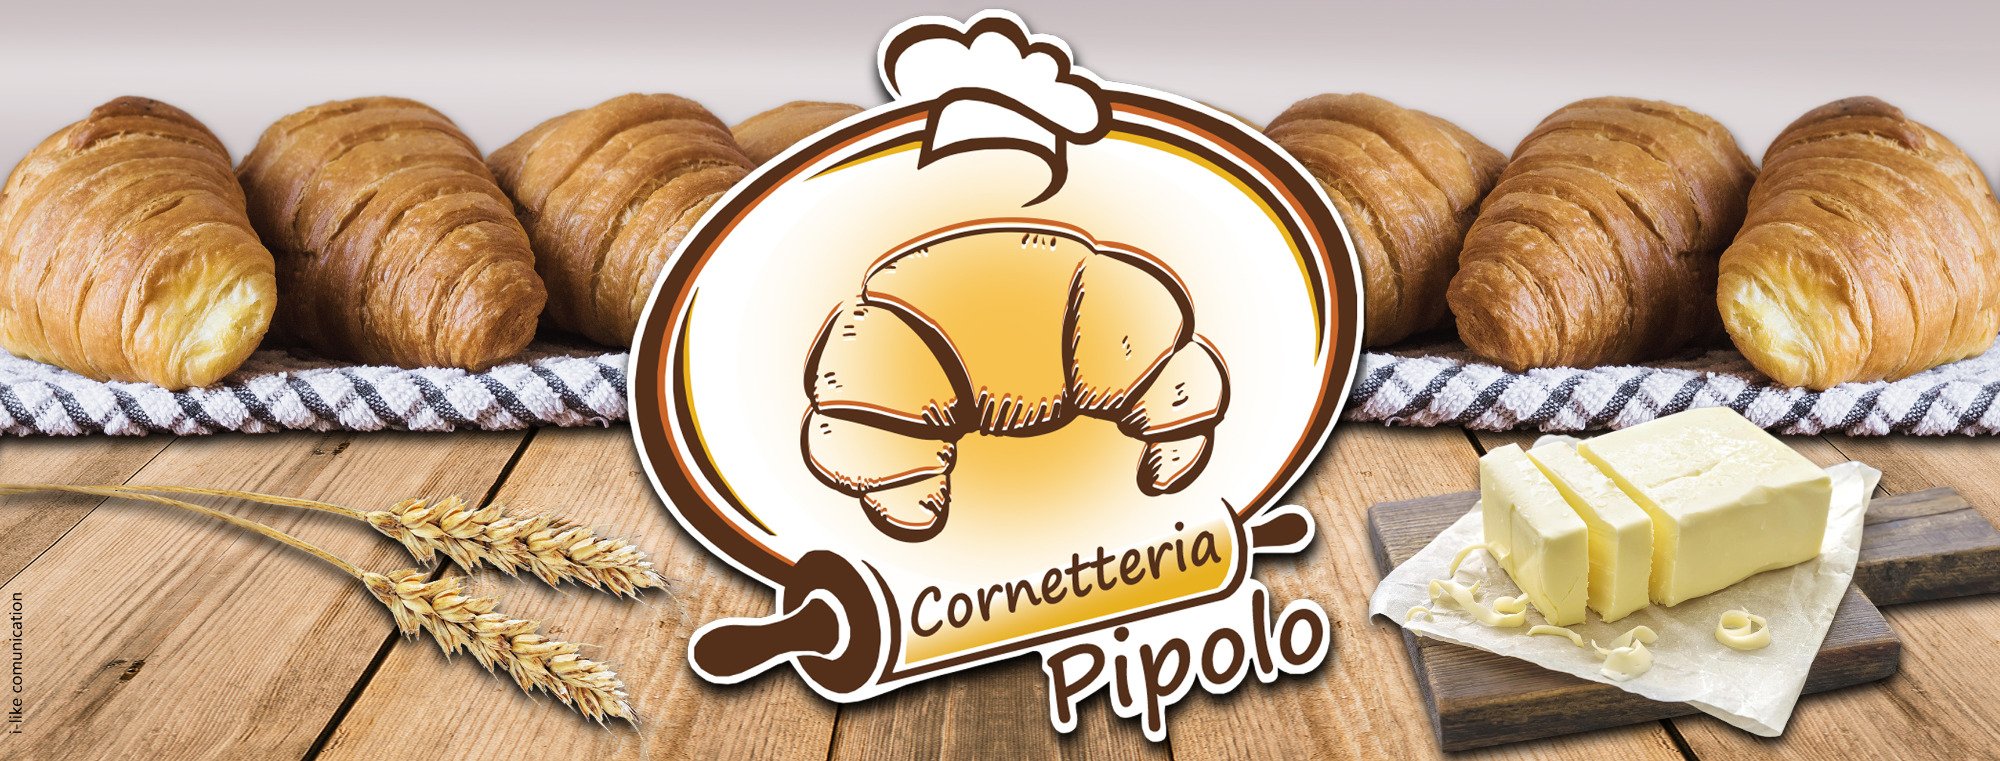 Cornetteria Pipolo, Volla